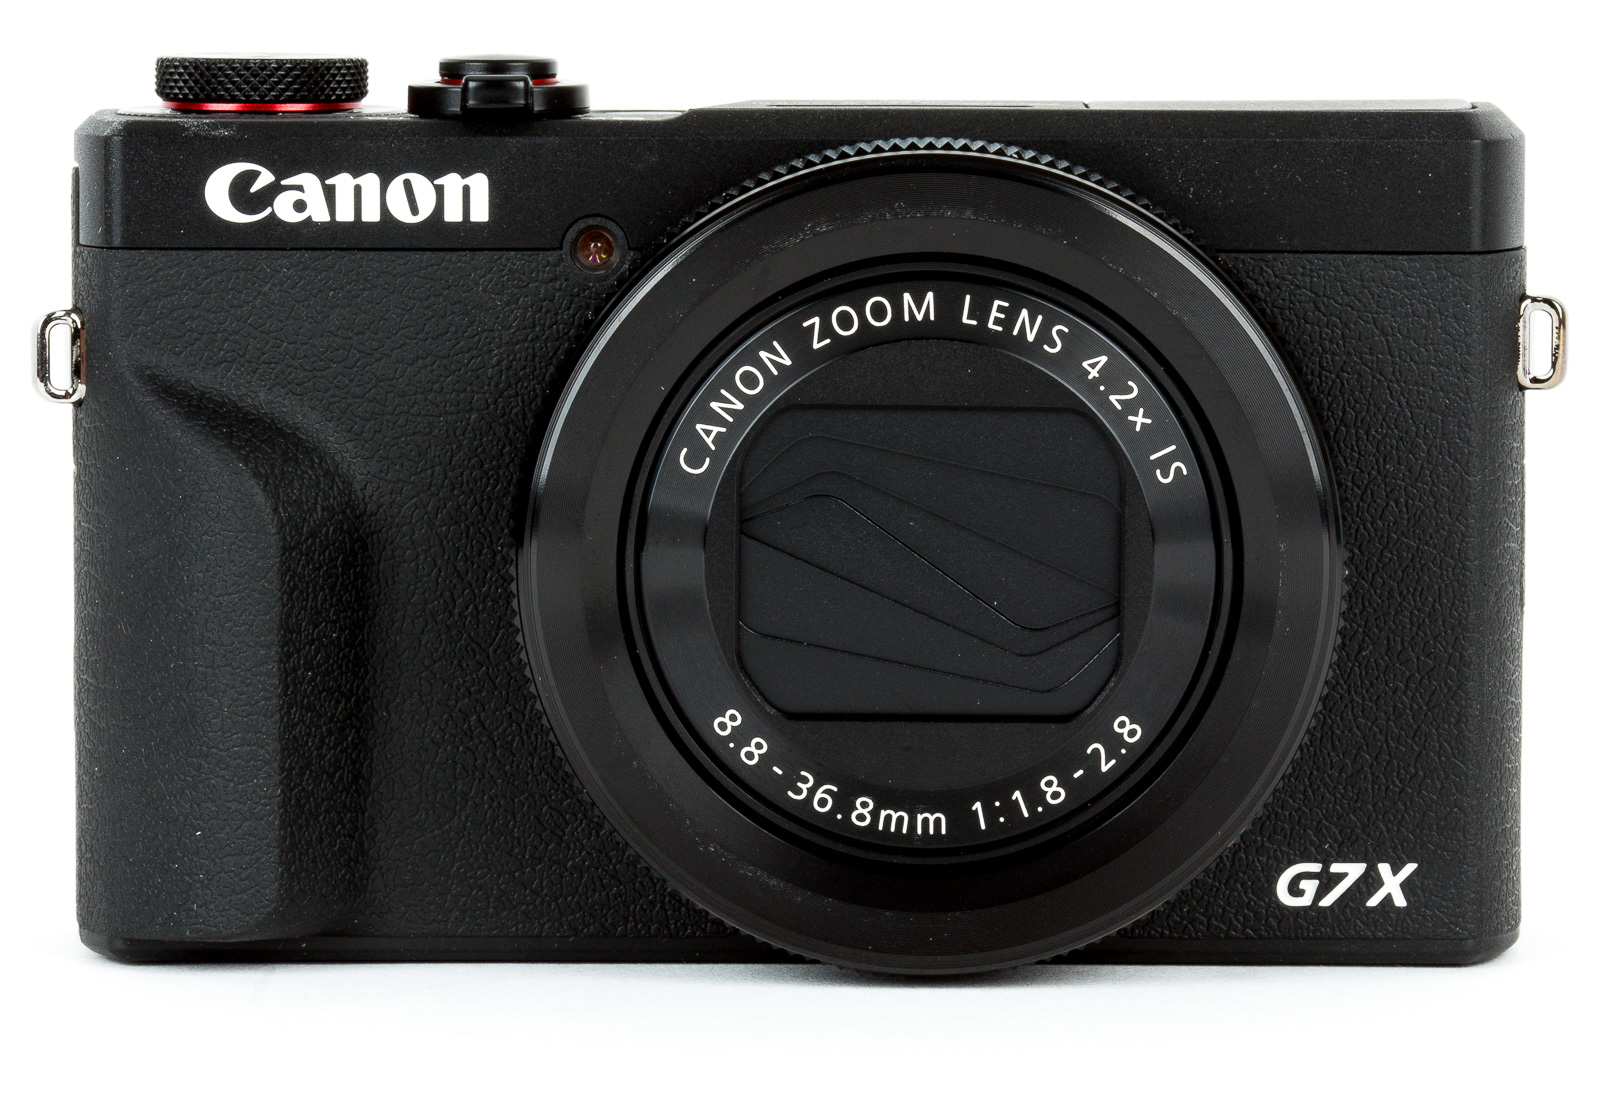 Image of Canon PowerShot G7 X Mark III